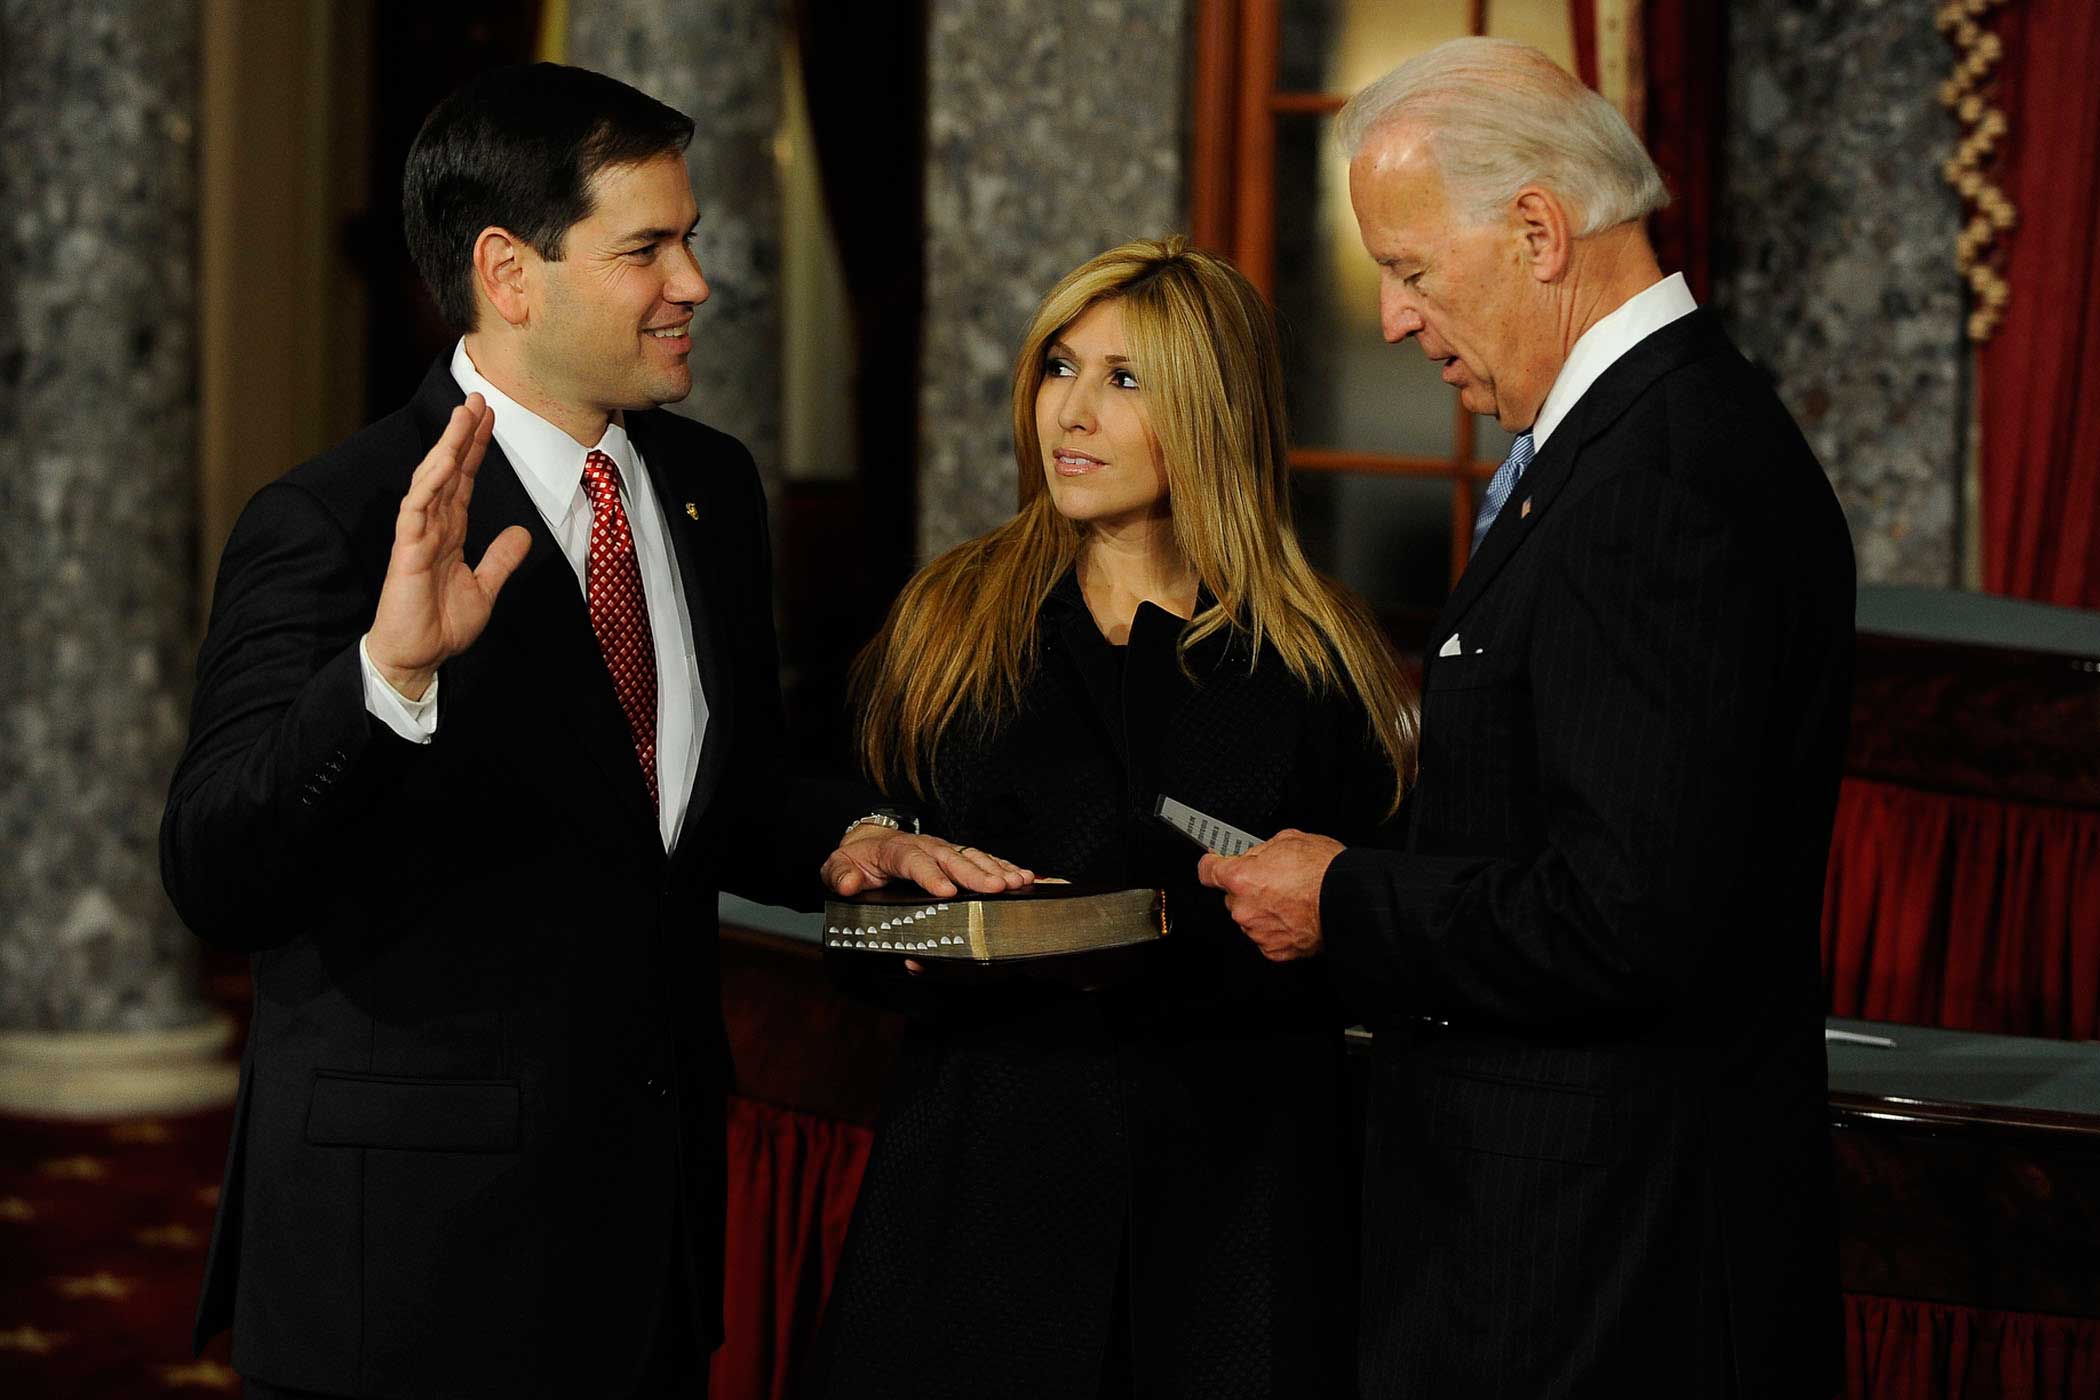 Vice President Joe Biden swears in Senator Marco Rubio to the U.S. Senate, on Jan. 5, 2010, in Washington, D.C. as his wife, Jeanette Rubio looks on.